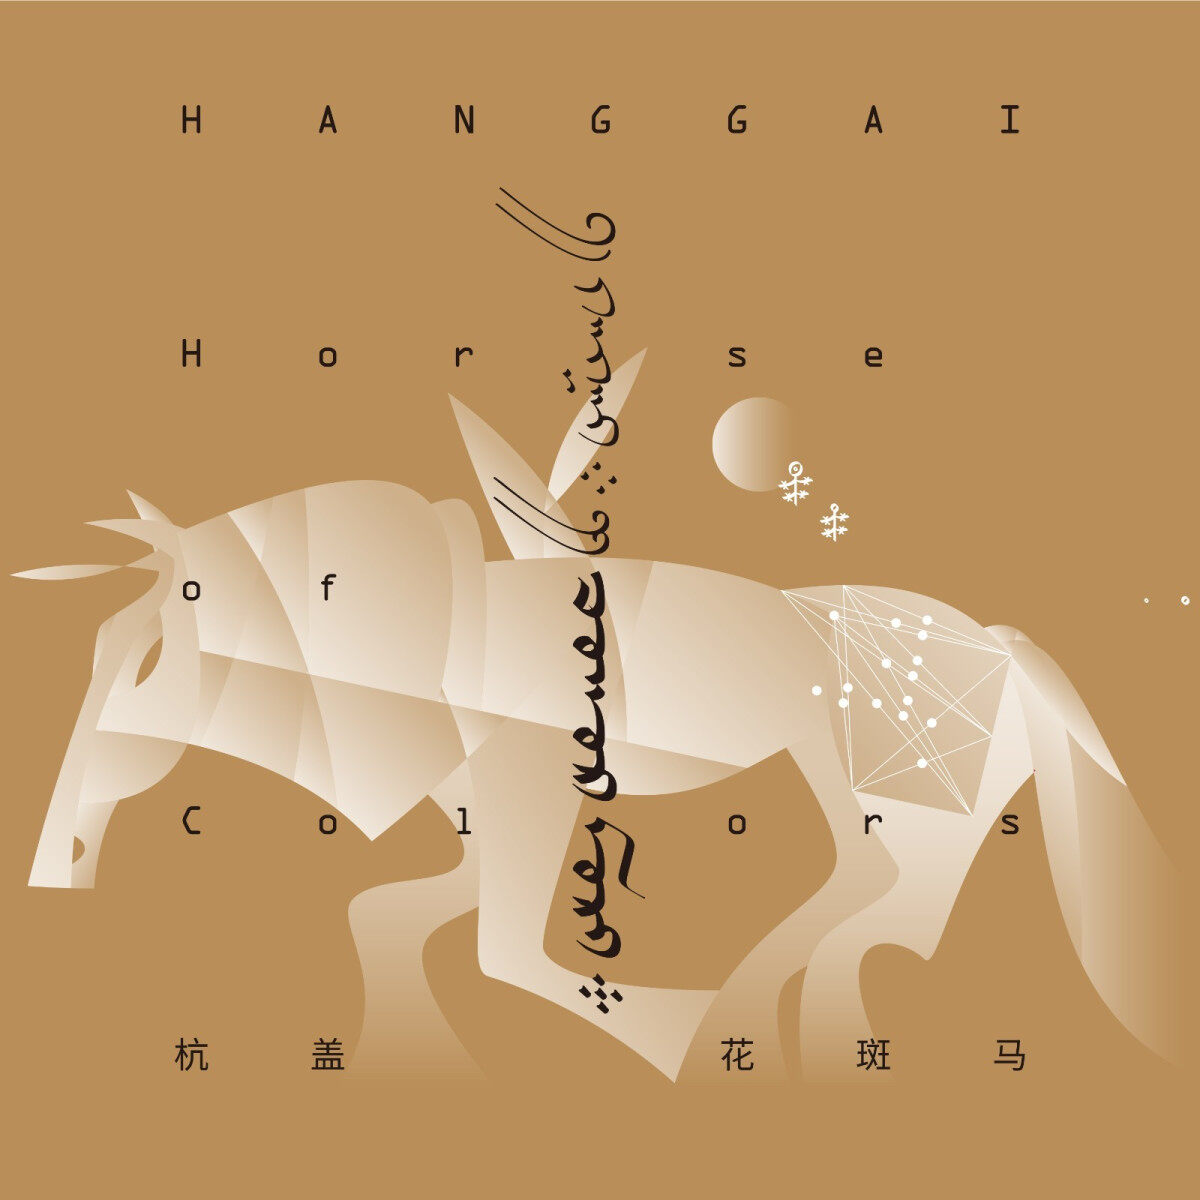 正版唱片 杭盖乐队专辑 花斑马 蒙古民族摇滚音乐 CD碟片